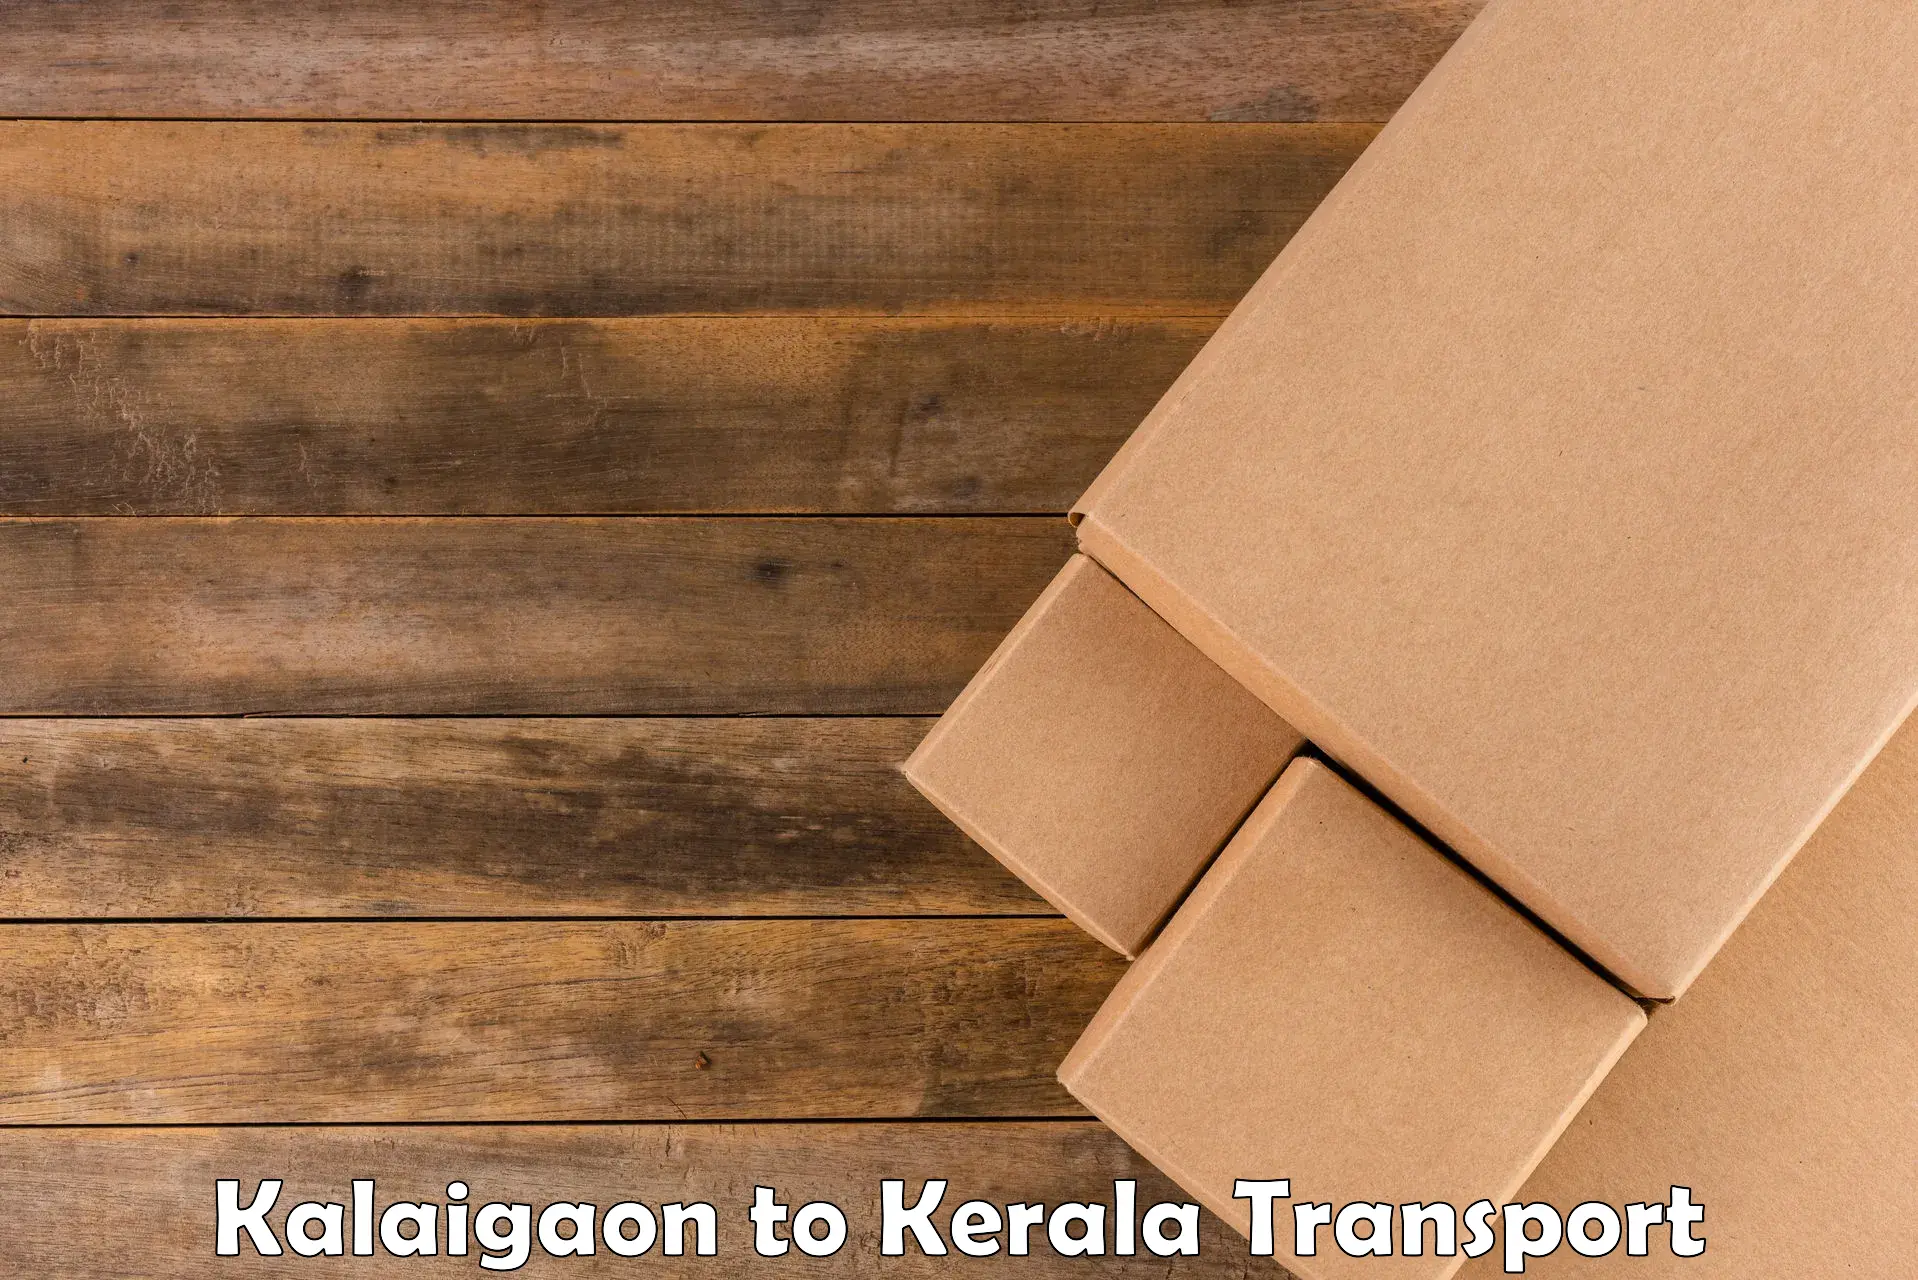 Online transport booking Kalaigaon to Kozhikode